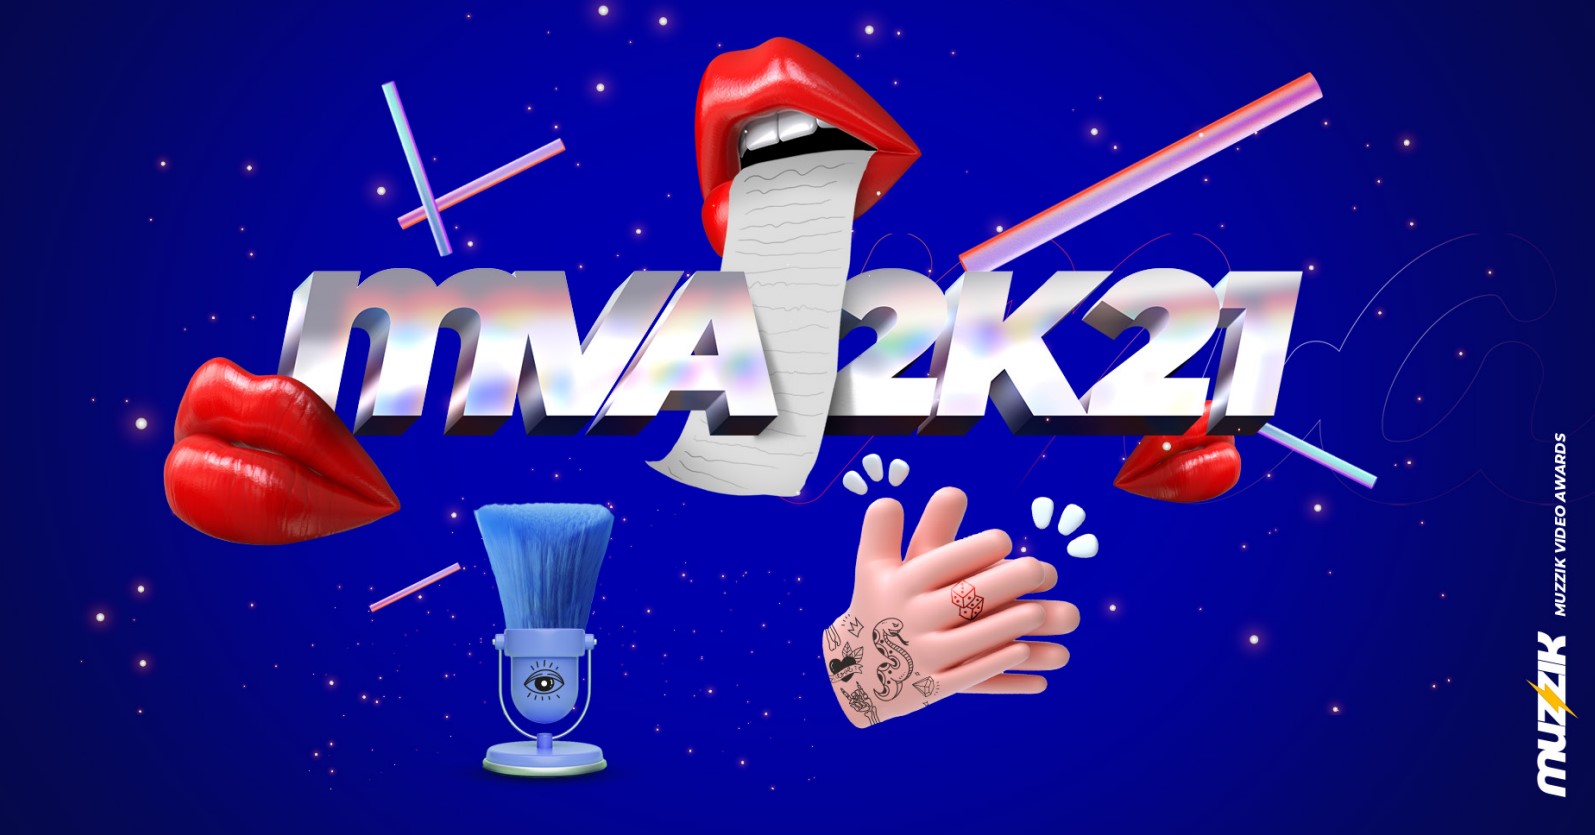 Da li ste se prijavili na MVA 2K21?